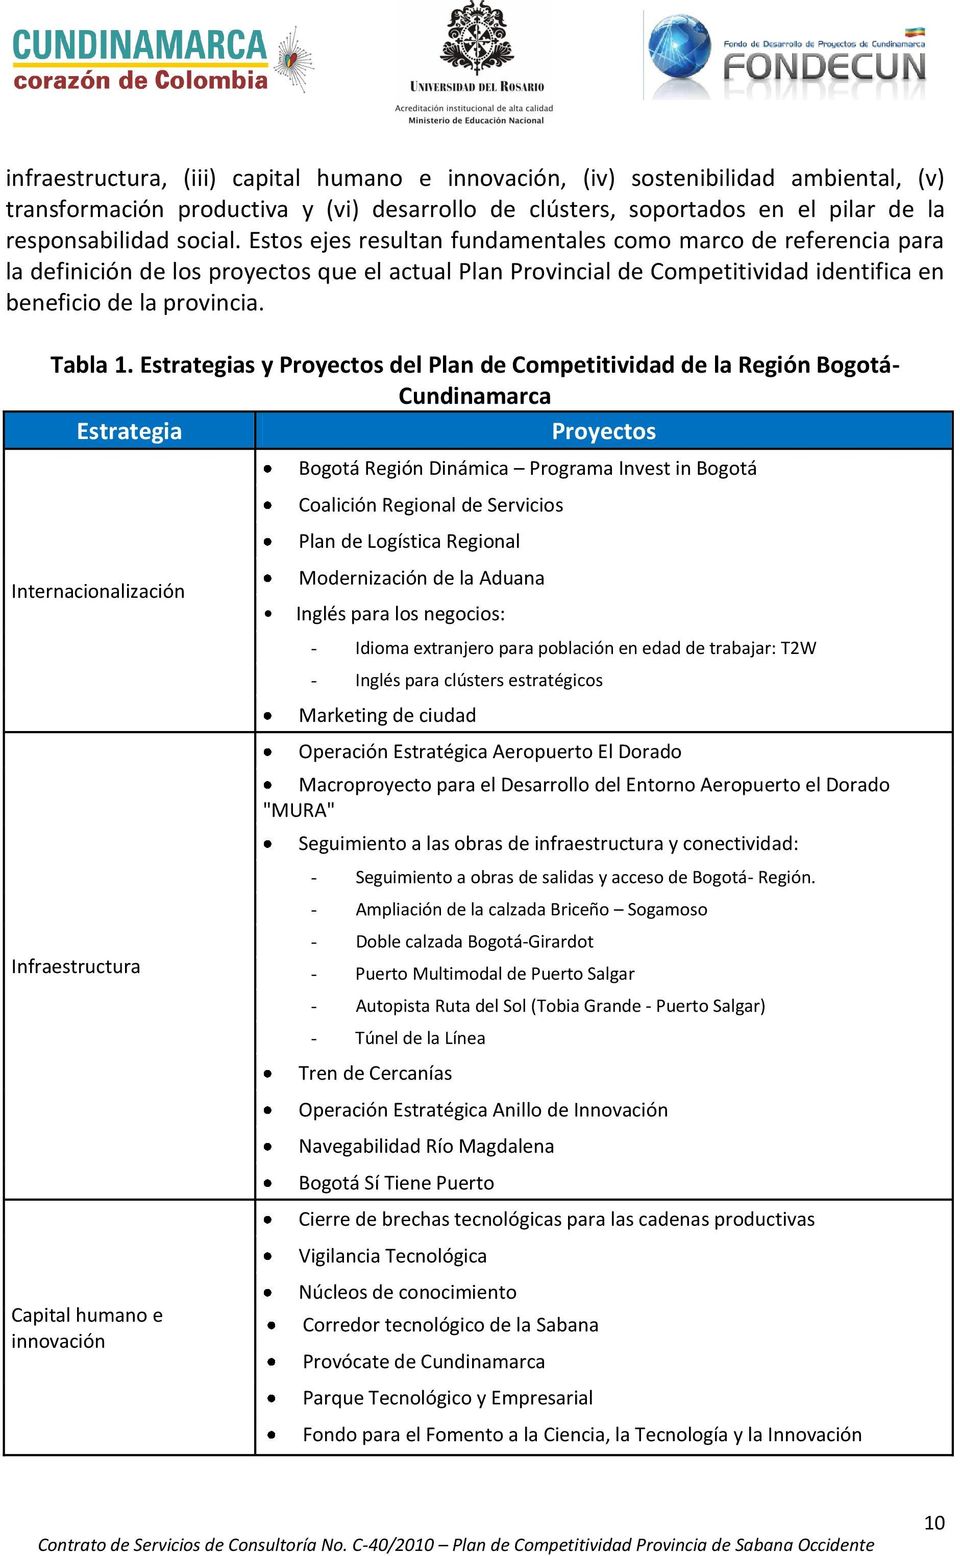 Estrategias y Proyectos del Plan de Competitividad de la Región Bogotá- Cundinamarca Estrategia Proyectos Internacionalización Infraestructura Capital humano e innovación Bogotá Región Dinámica